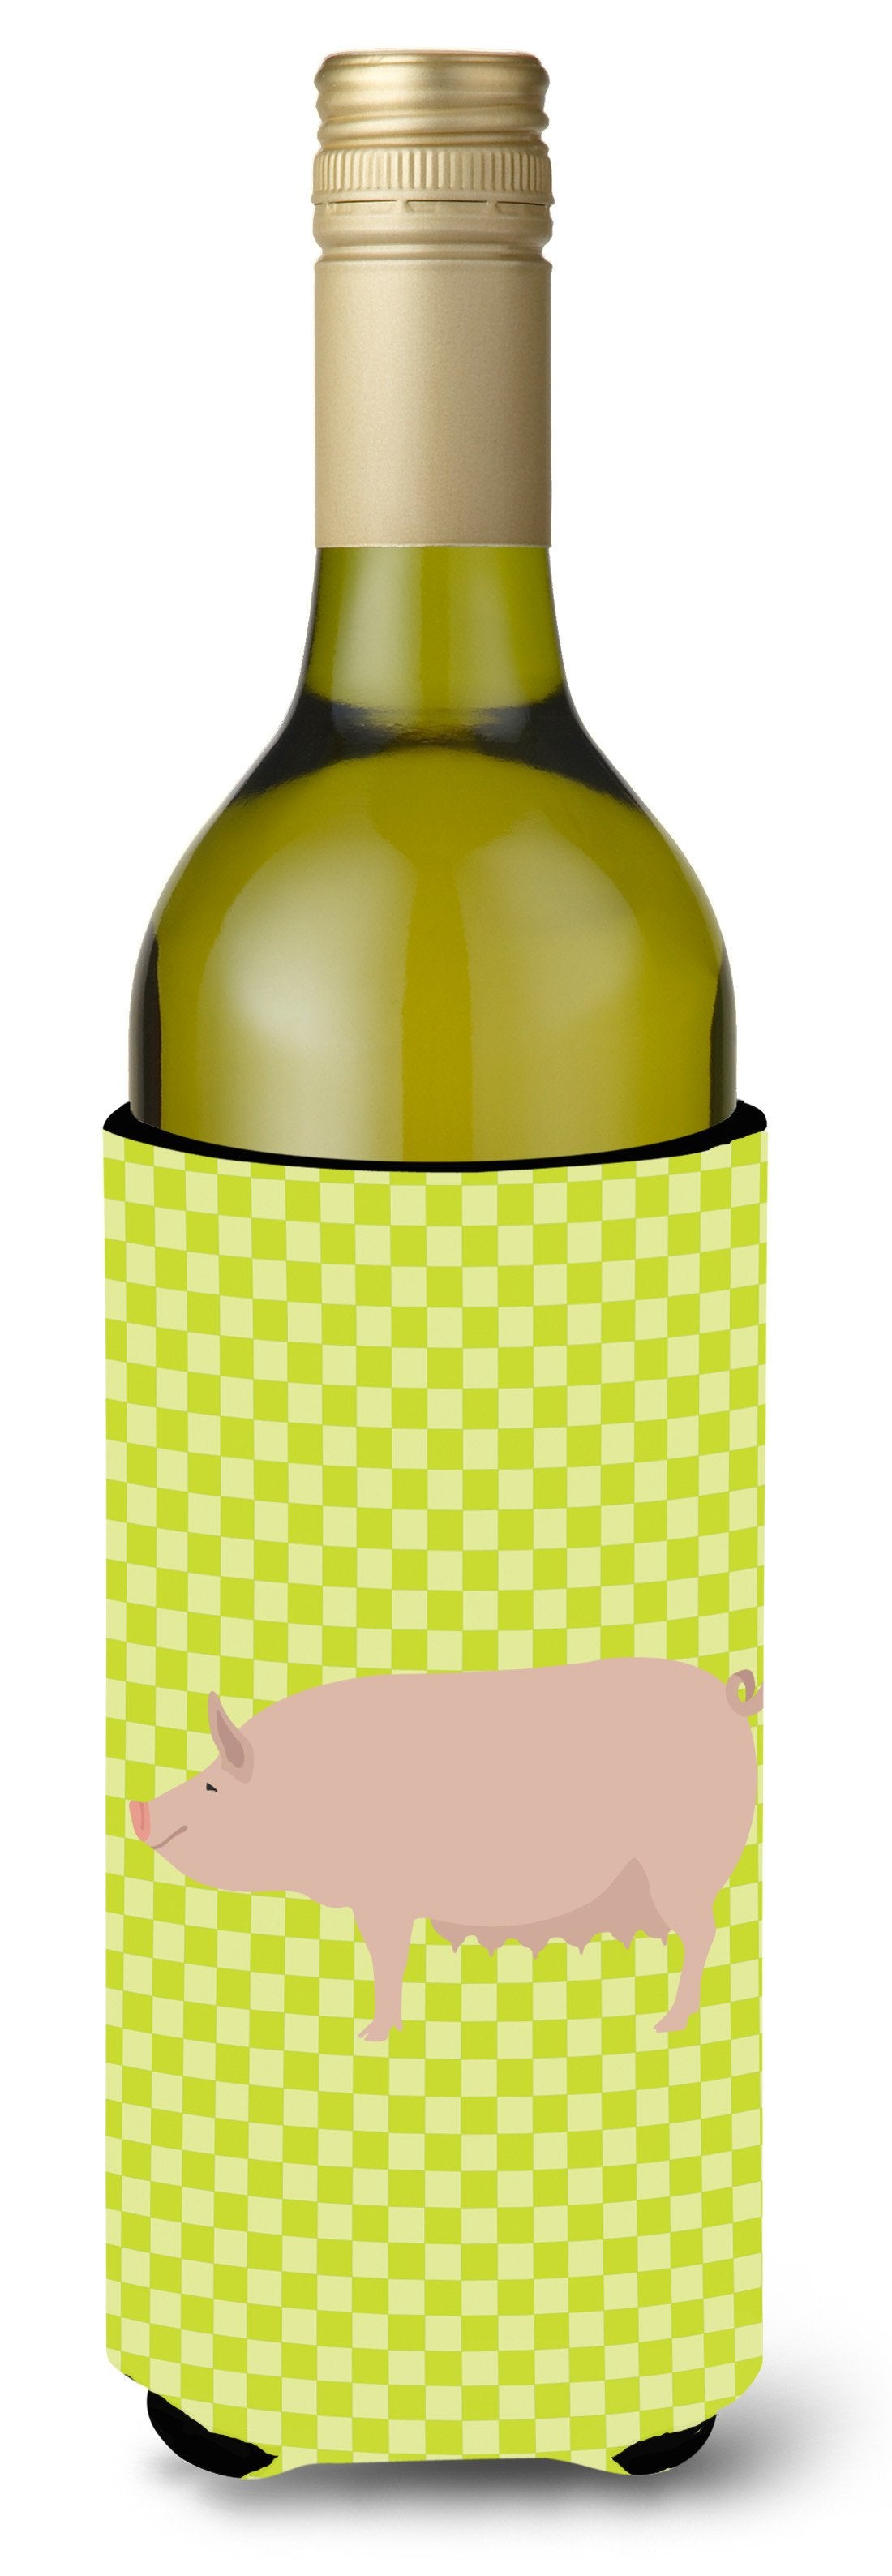 English Large White Pig Green Wine Bottle Beverge Insulator Hugger BB7764LITERK by Caroline's Treasures